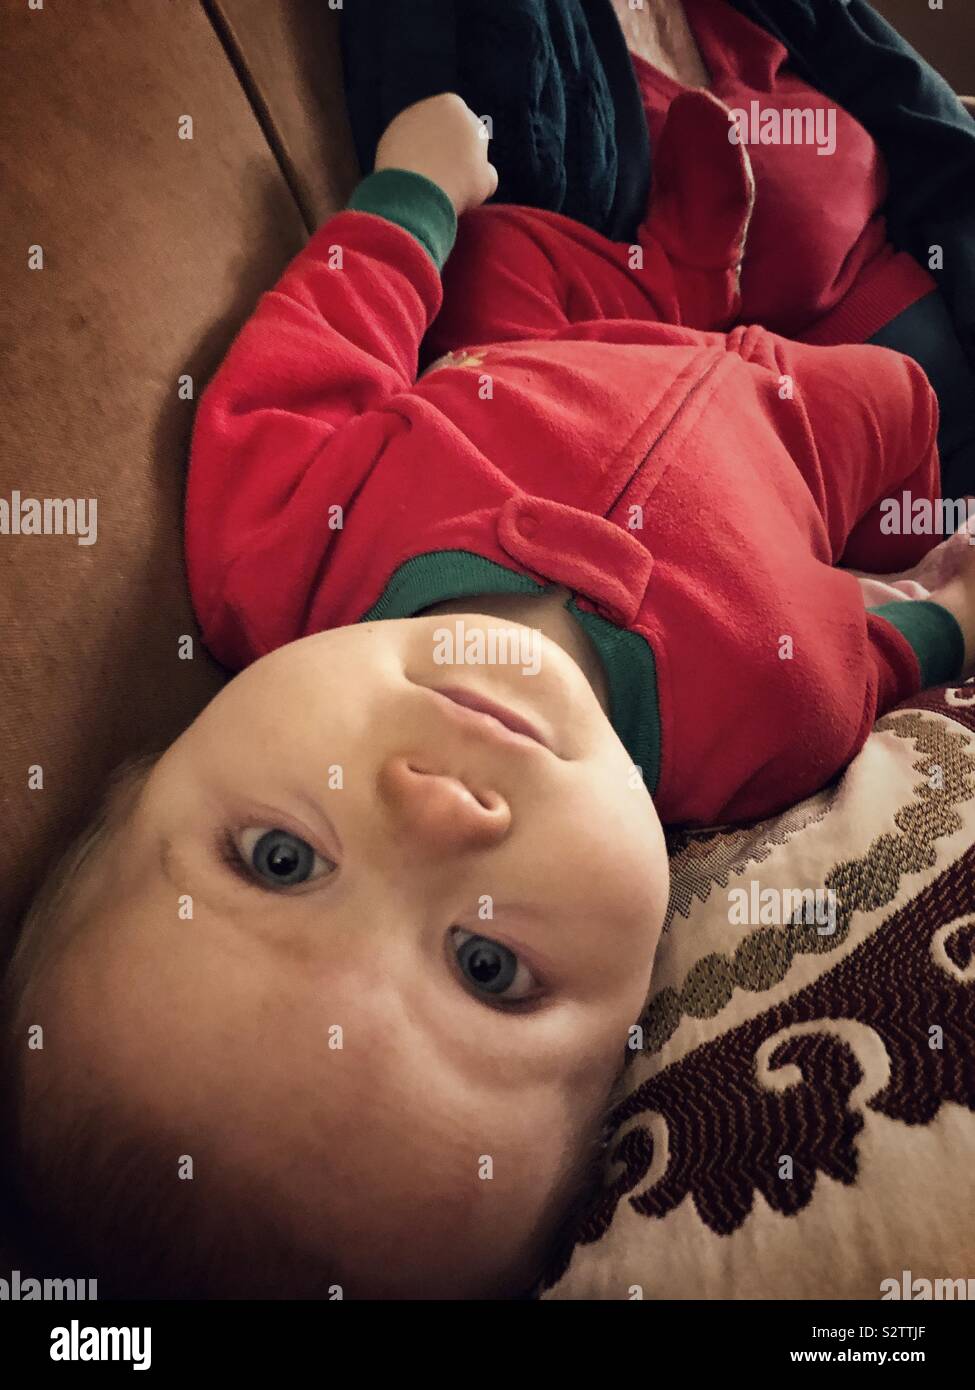 Un bébé couché à l'envers à regarder la caméra. Le bébé porte un lit rouge  et vert Photo Stock - Alamy